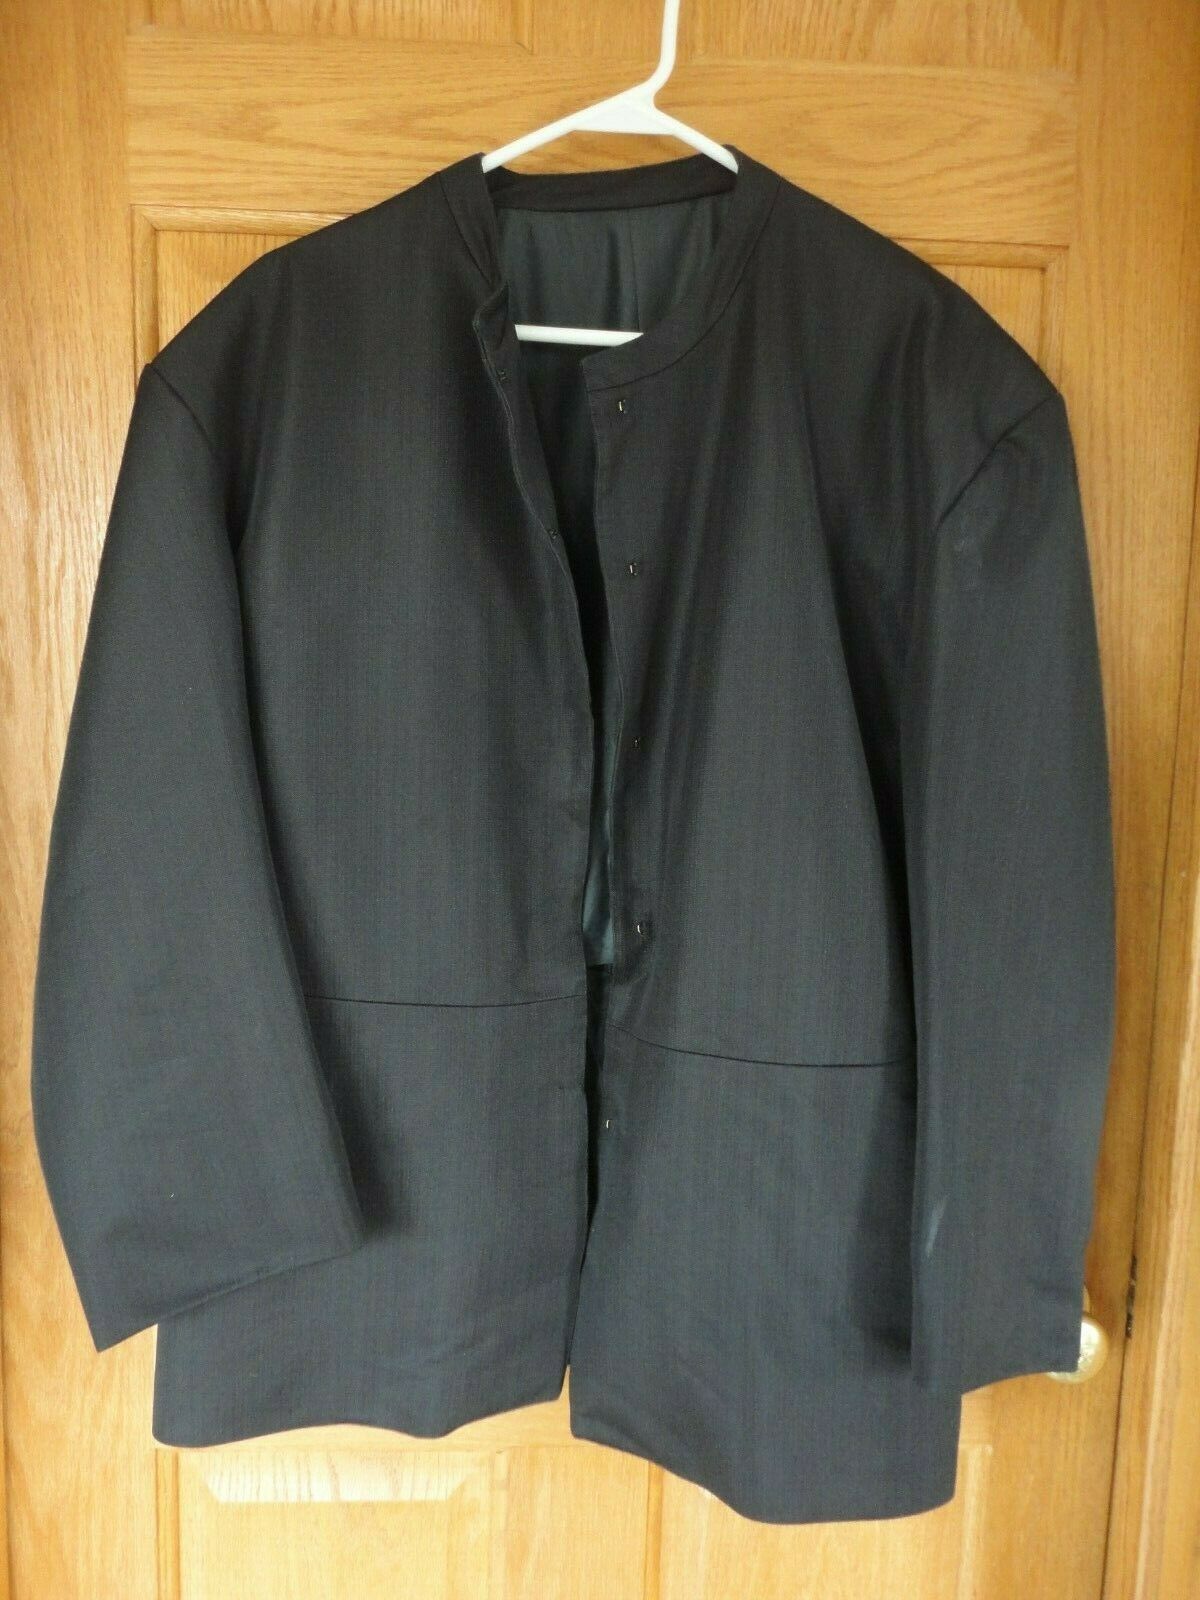 Amish Mennonite Men Black Jacket & Vest Only